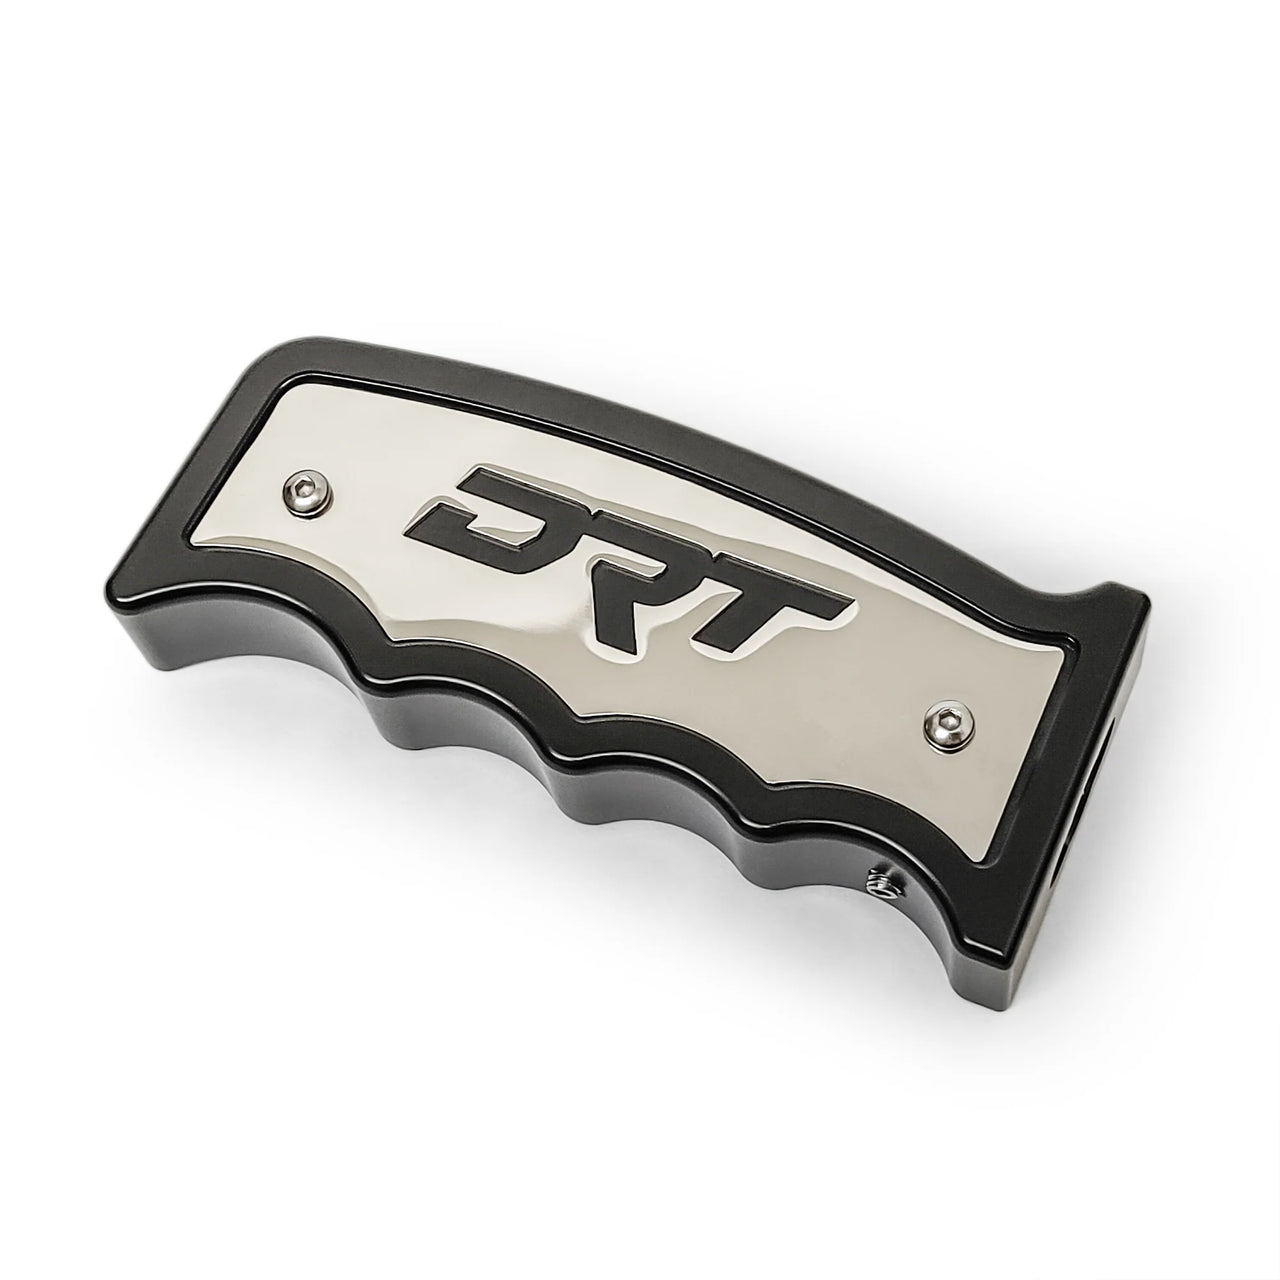 DRT Motorsports Grip Shifter V2.0 - Honda Talon